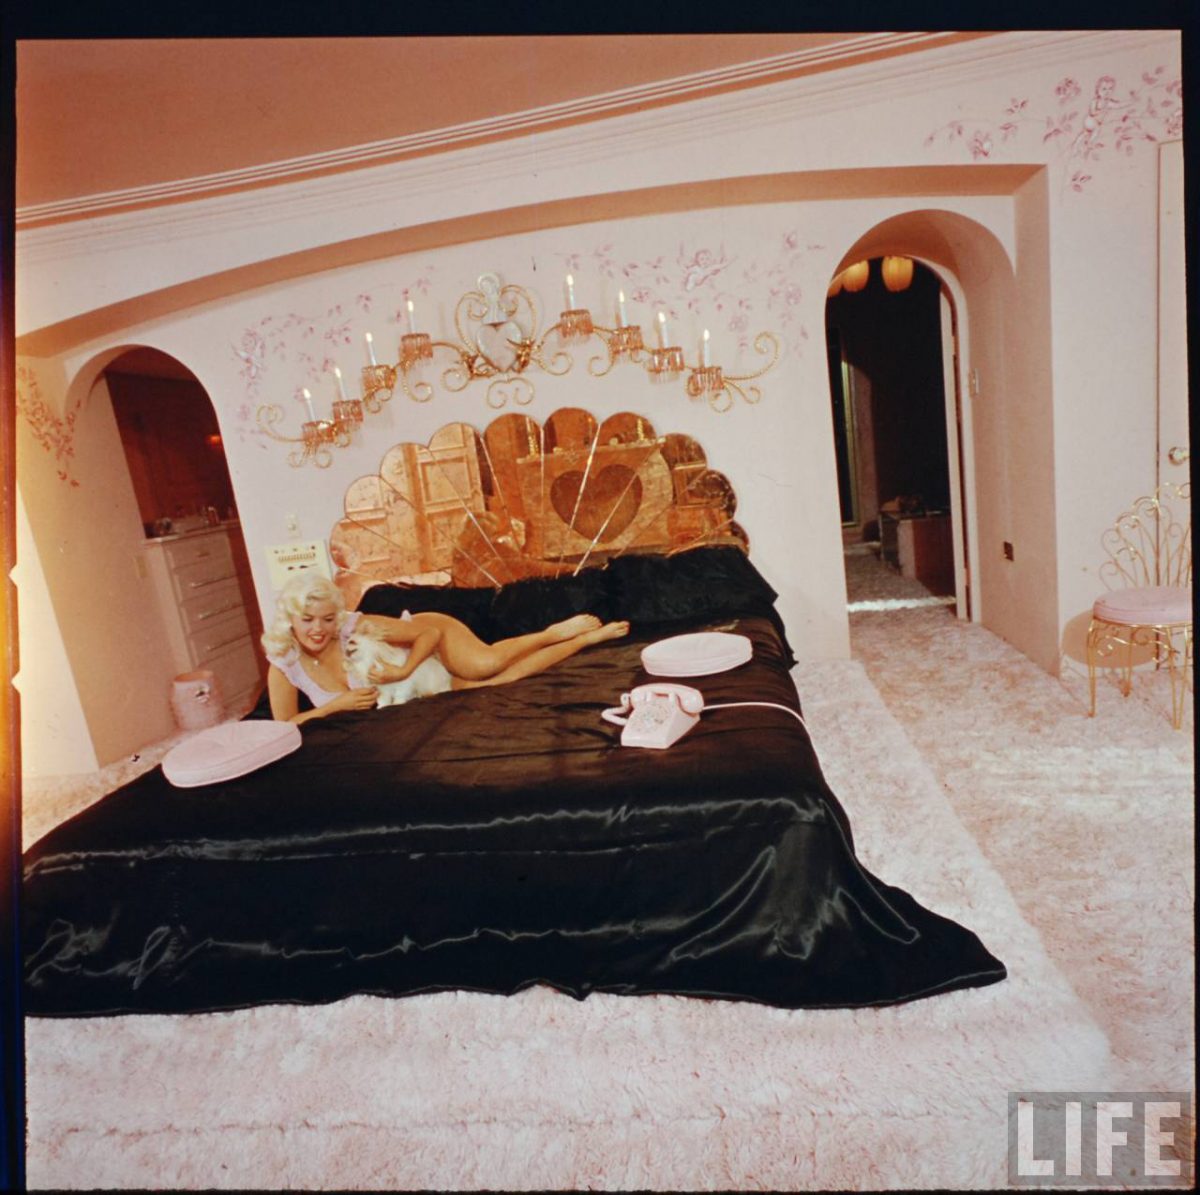 Jayne Mansfield's Pink Palace